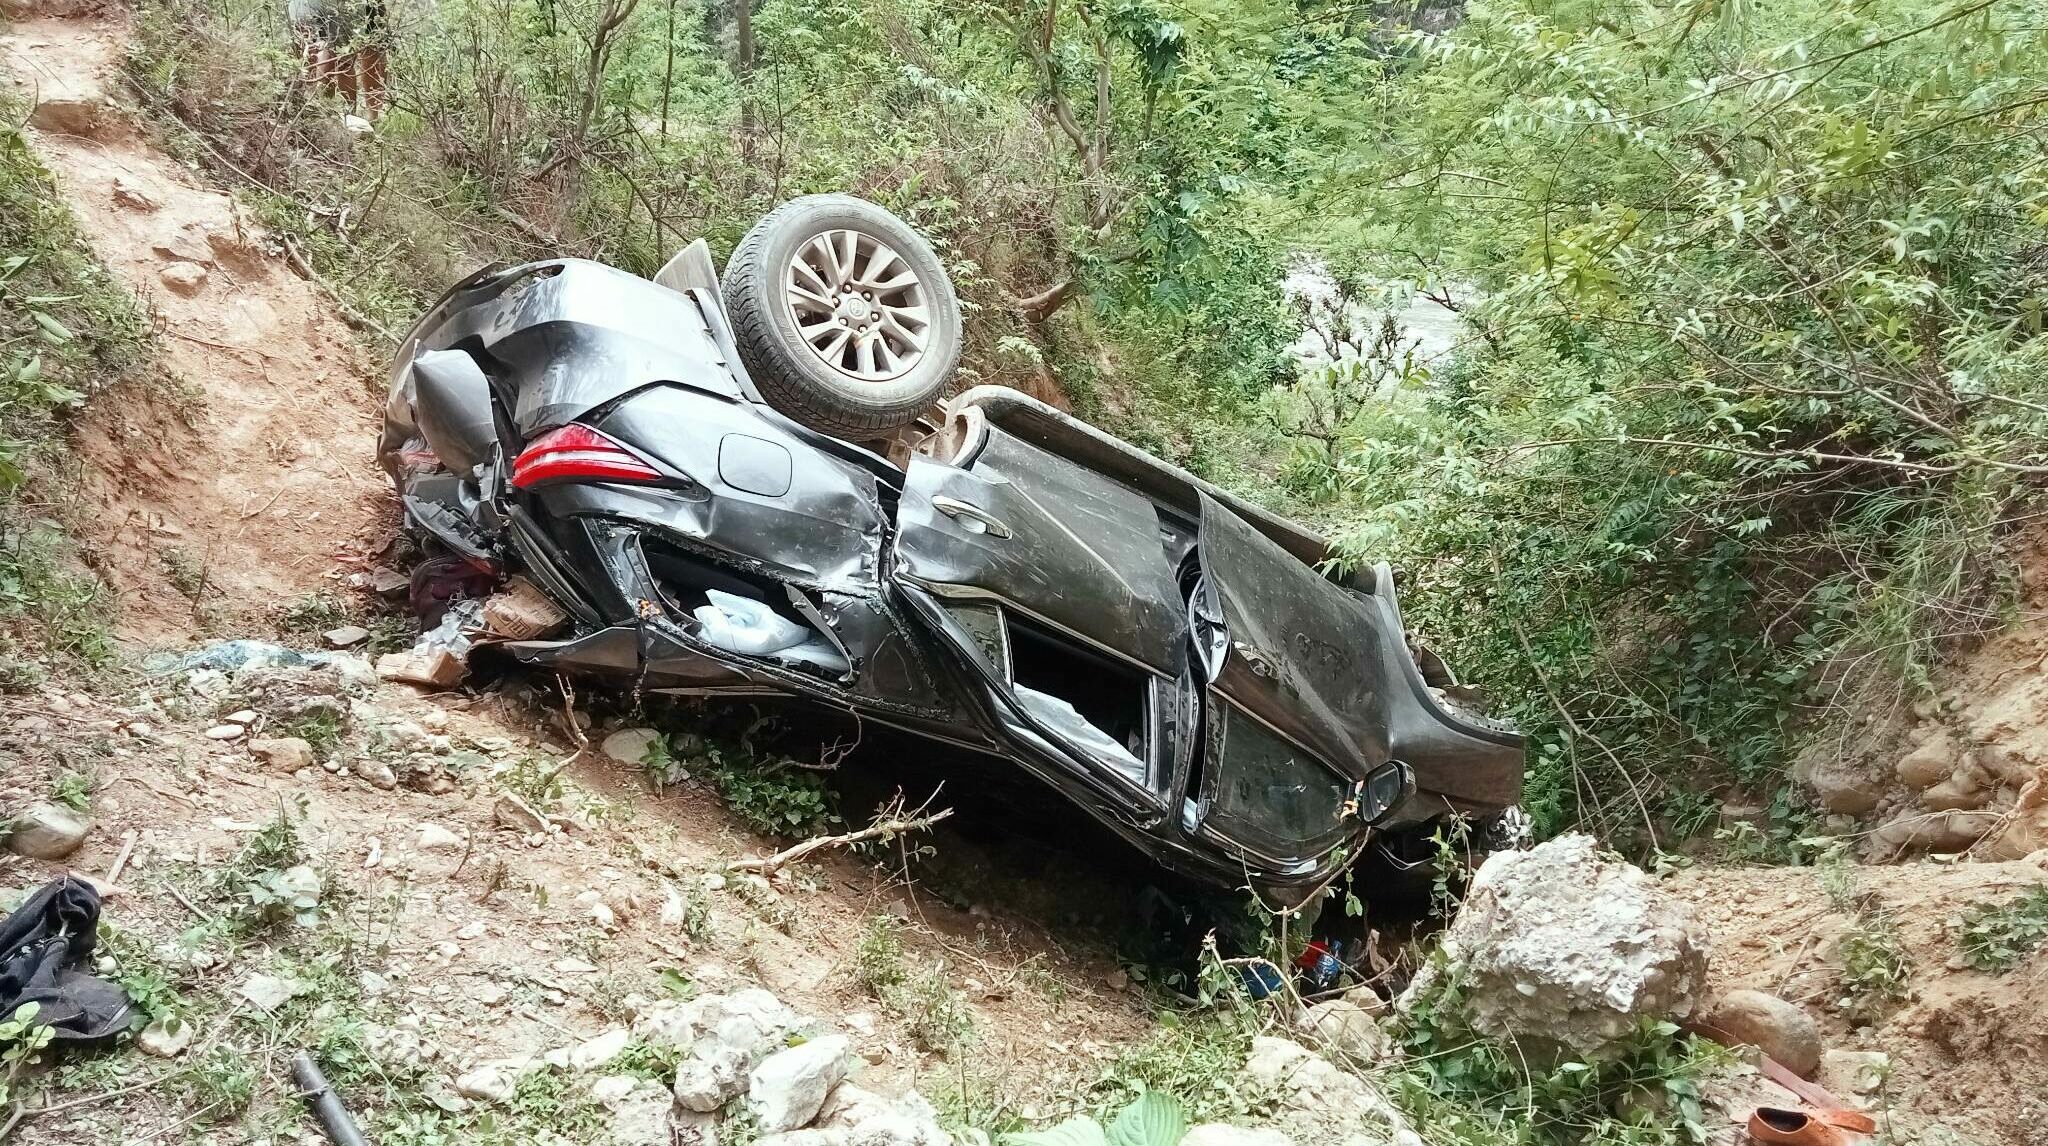 सुदुरपश्चिमका कानुनमन्त्री सिंह सवार गाडी दुर्घटना